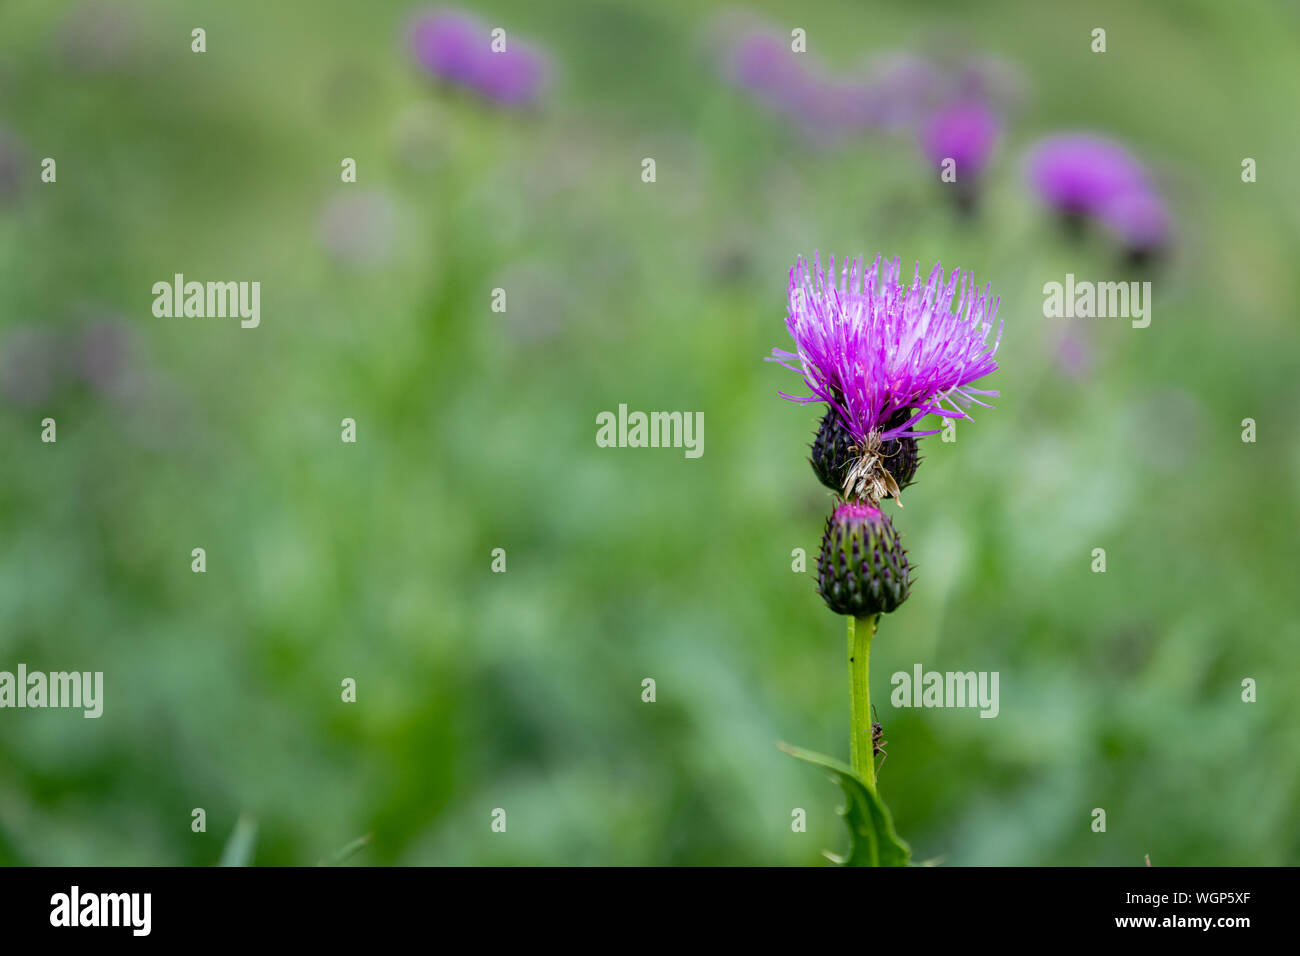 Thistle Blume - Nahaufnahme der lila Distel Blume mit selektiven Fokus, verschwommenen Hintergrund Stockfoto